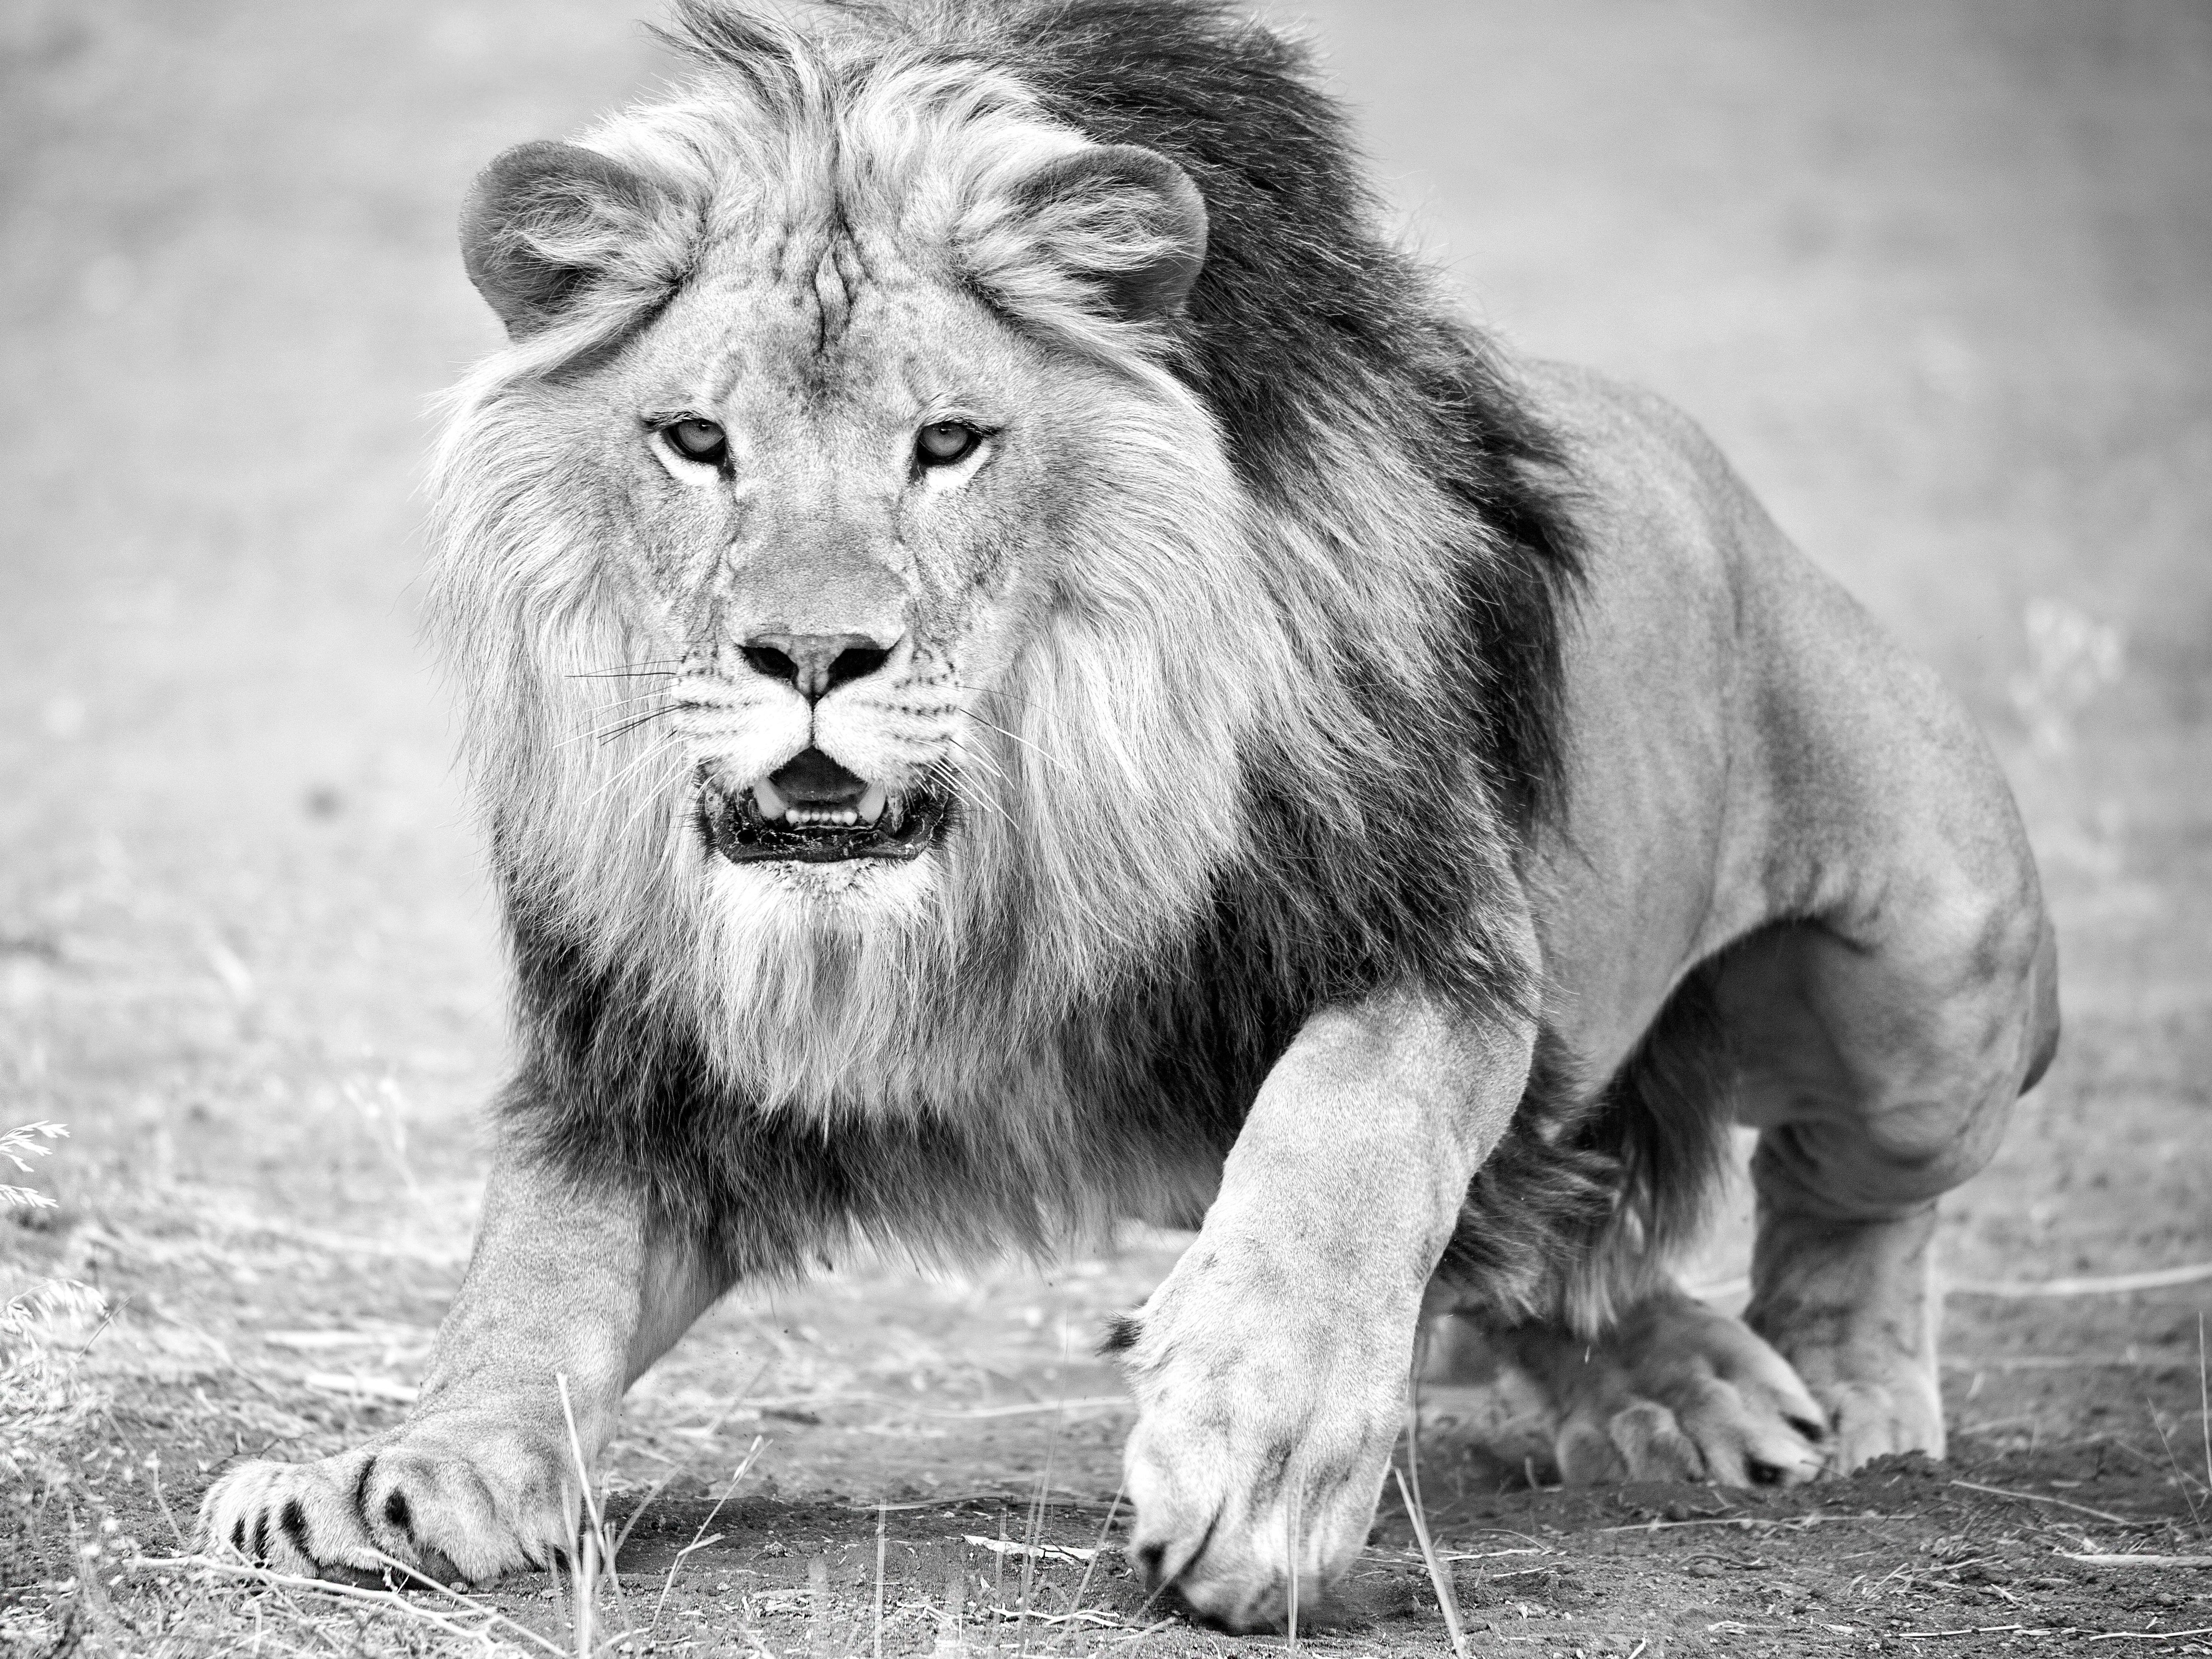 "The Charge" 28x40 - Photographie en noir et blanc, Photographie de Lion, Tirage non signé